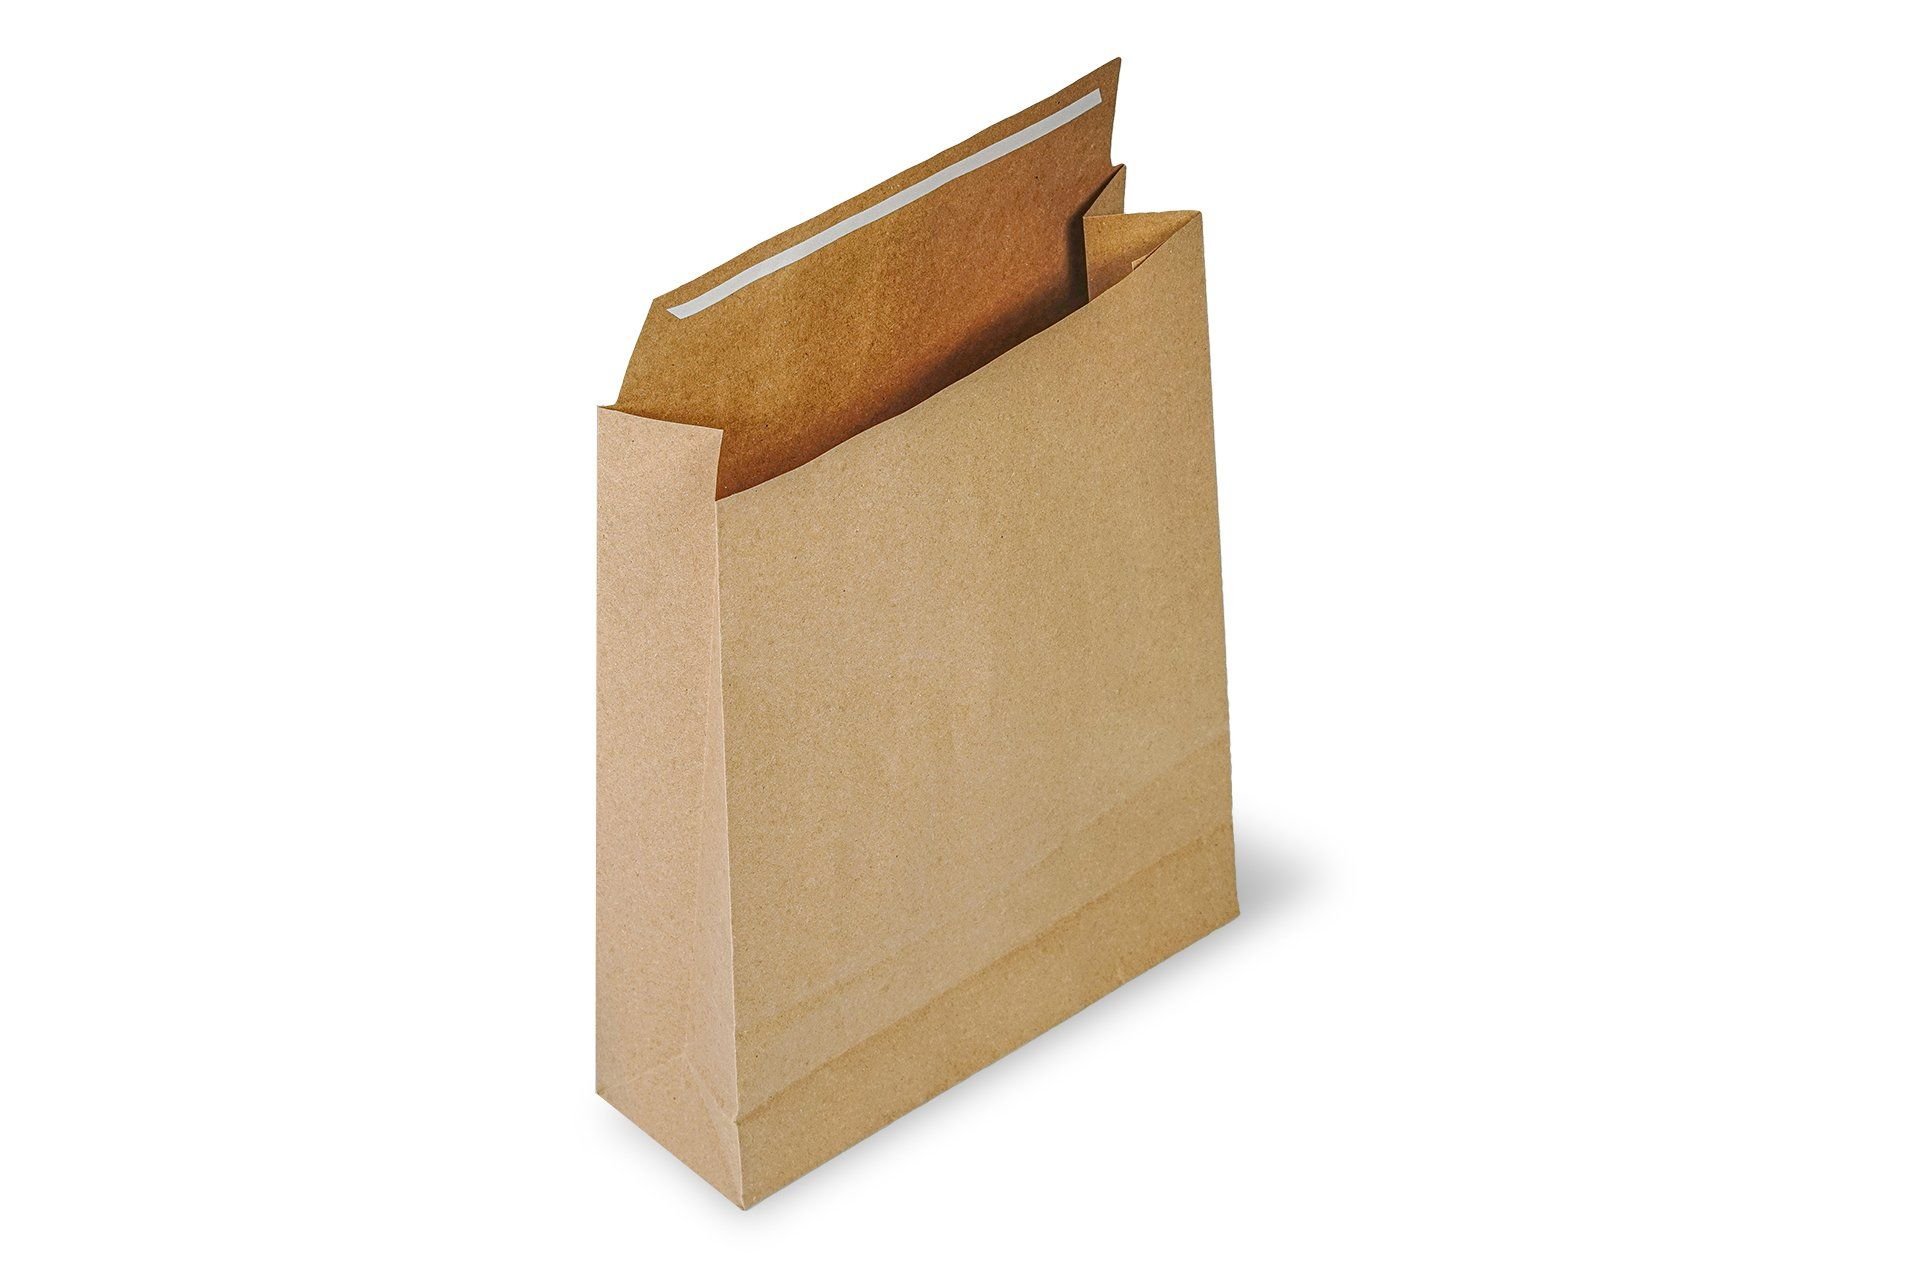 Roco Paper Hediye Paketi 15*6*25,5 cm Kese Kağıdı Yapışkanlı Ağız Kraft 25'li Paket